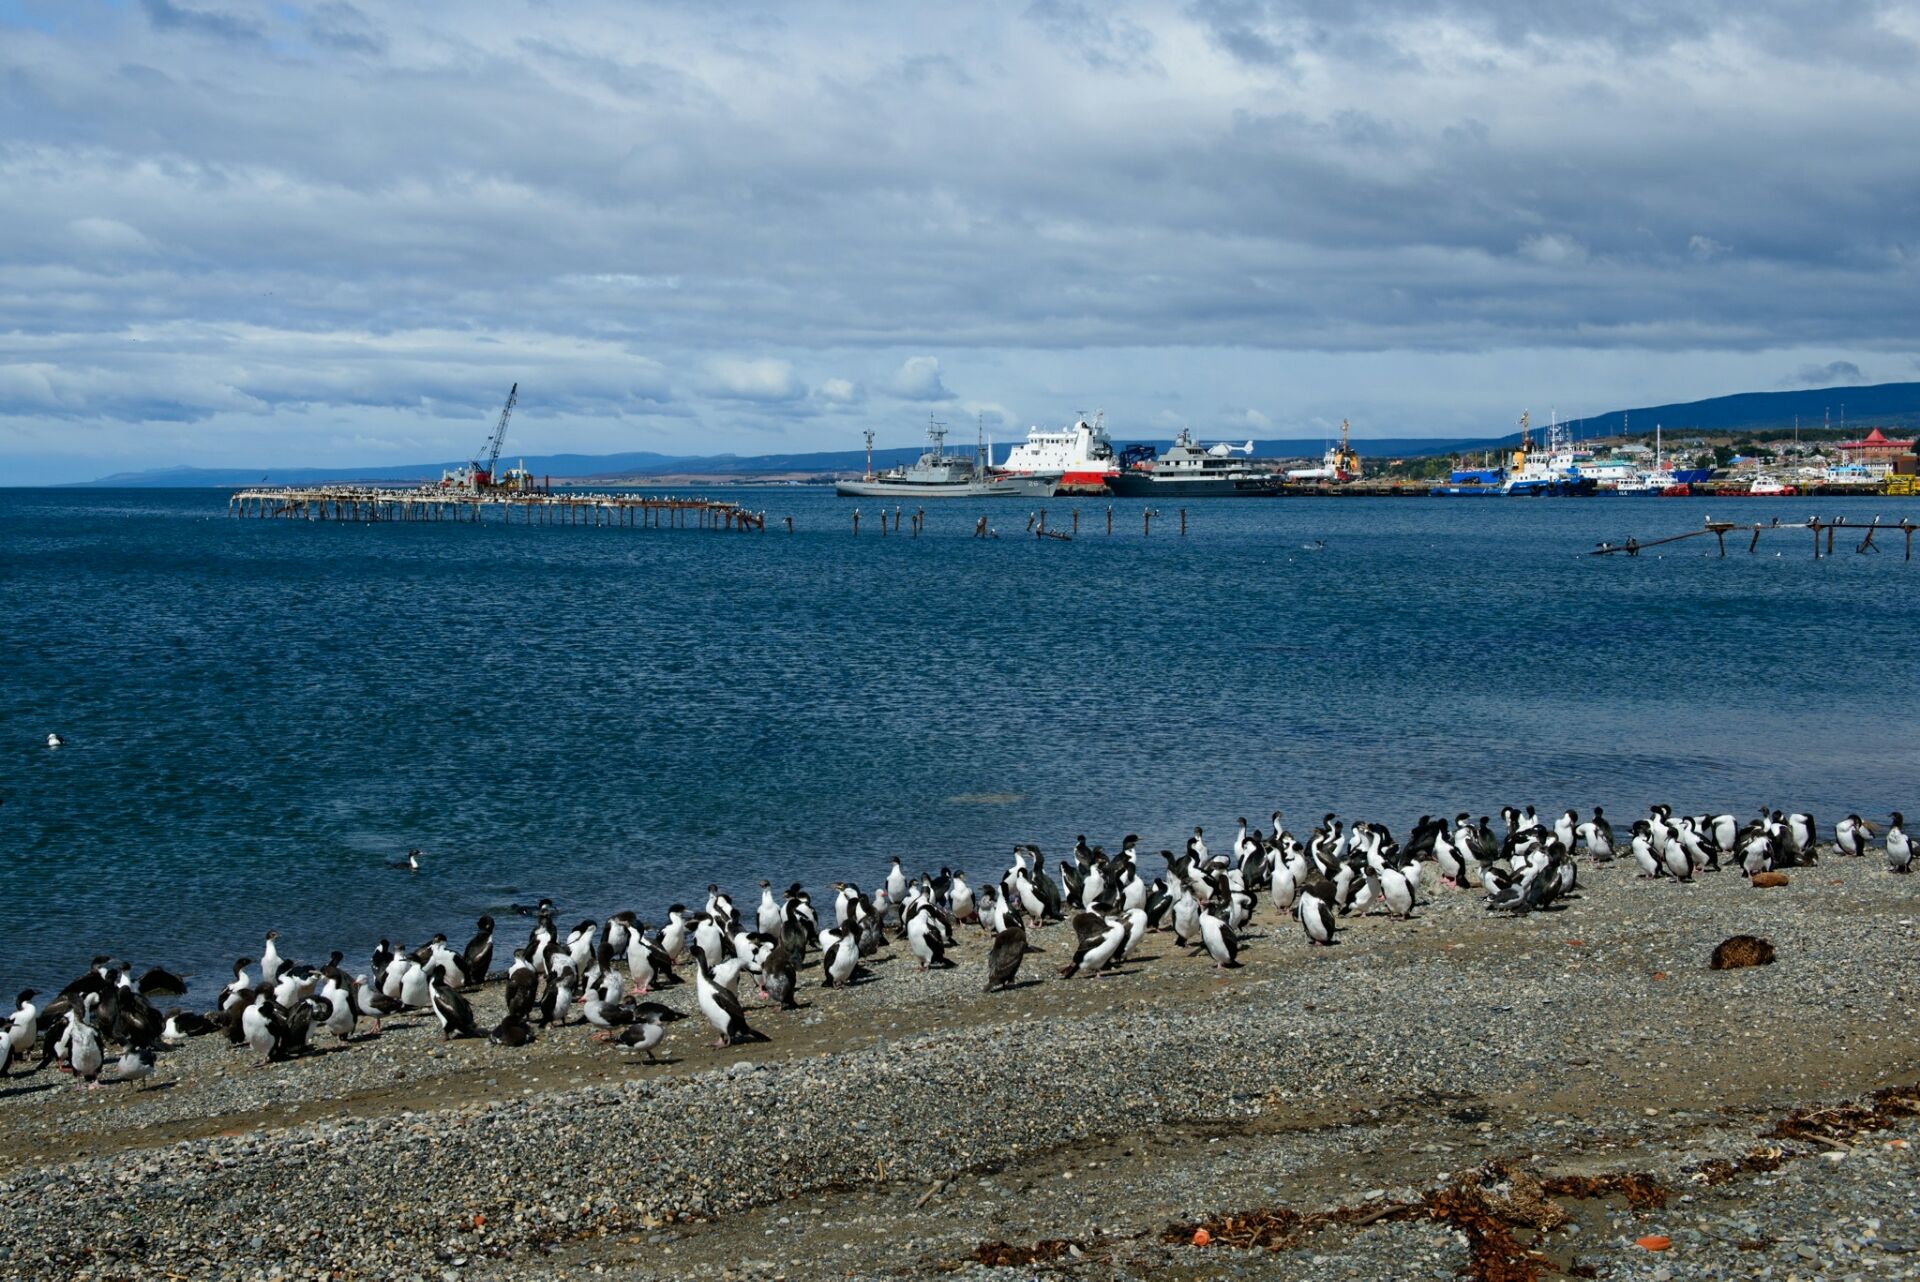 蓬塔阿雷拉斯的企鹅岛在岛上生活着数以万计的企鹅。光是企鹅的品种就有十几种，有许多世界珍稀的企鹅物种。